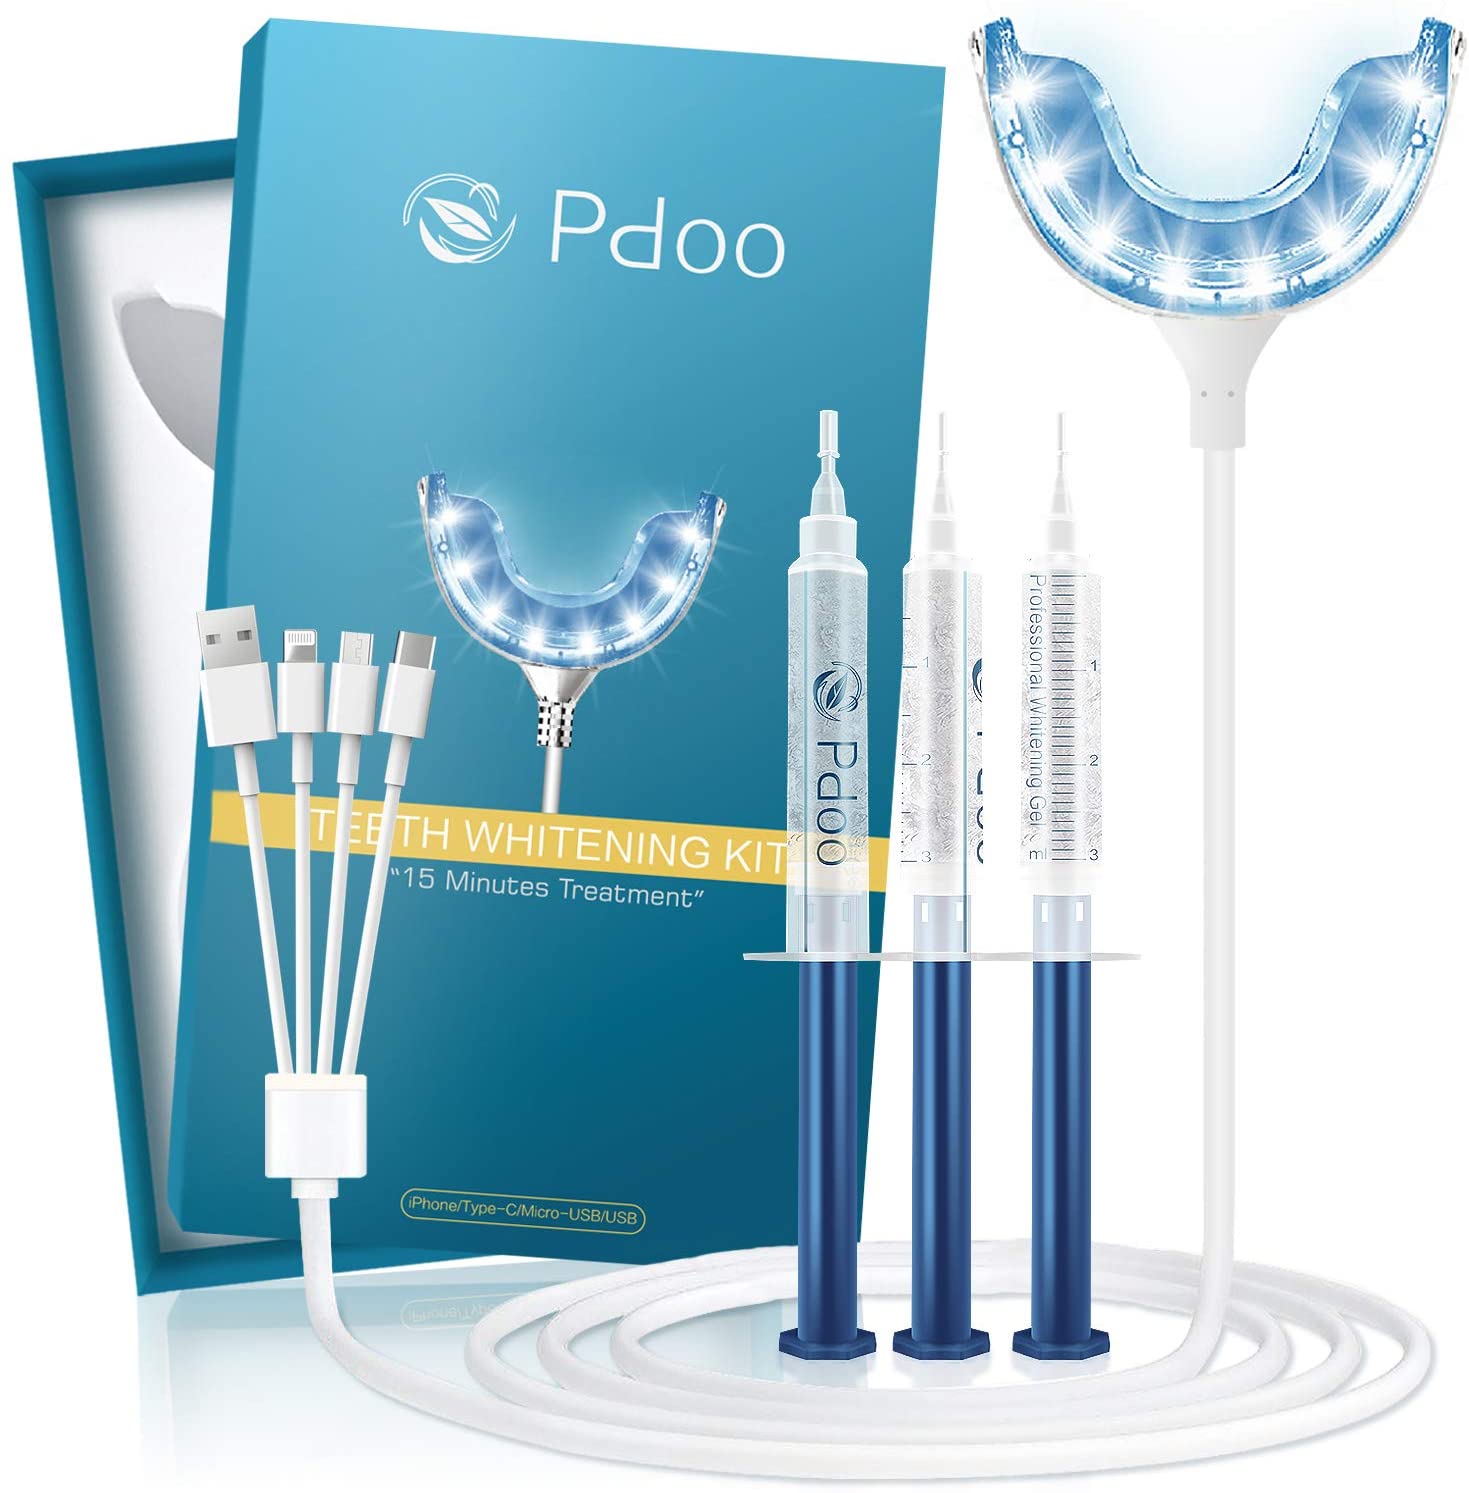 10. PDOO Teeth Whitening Kit